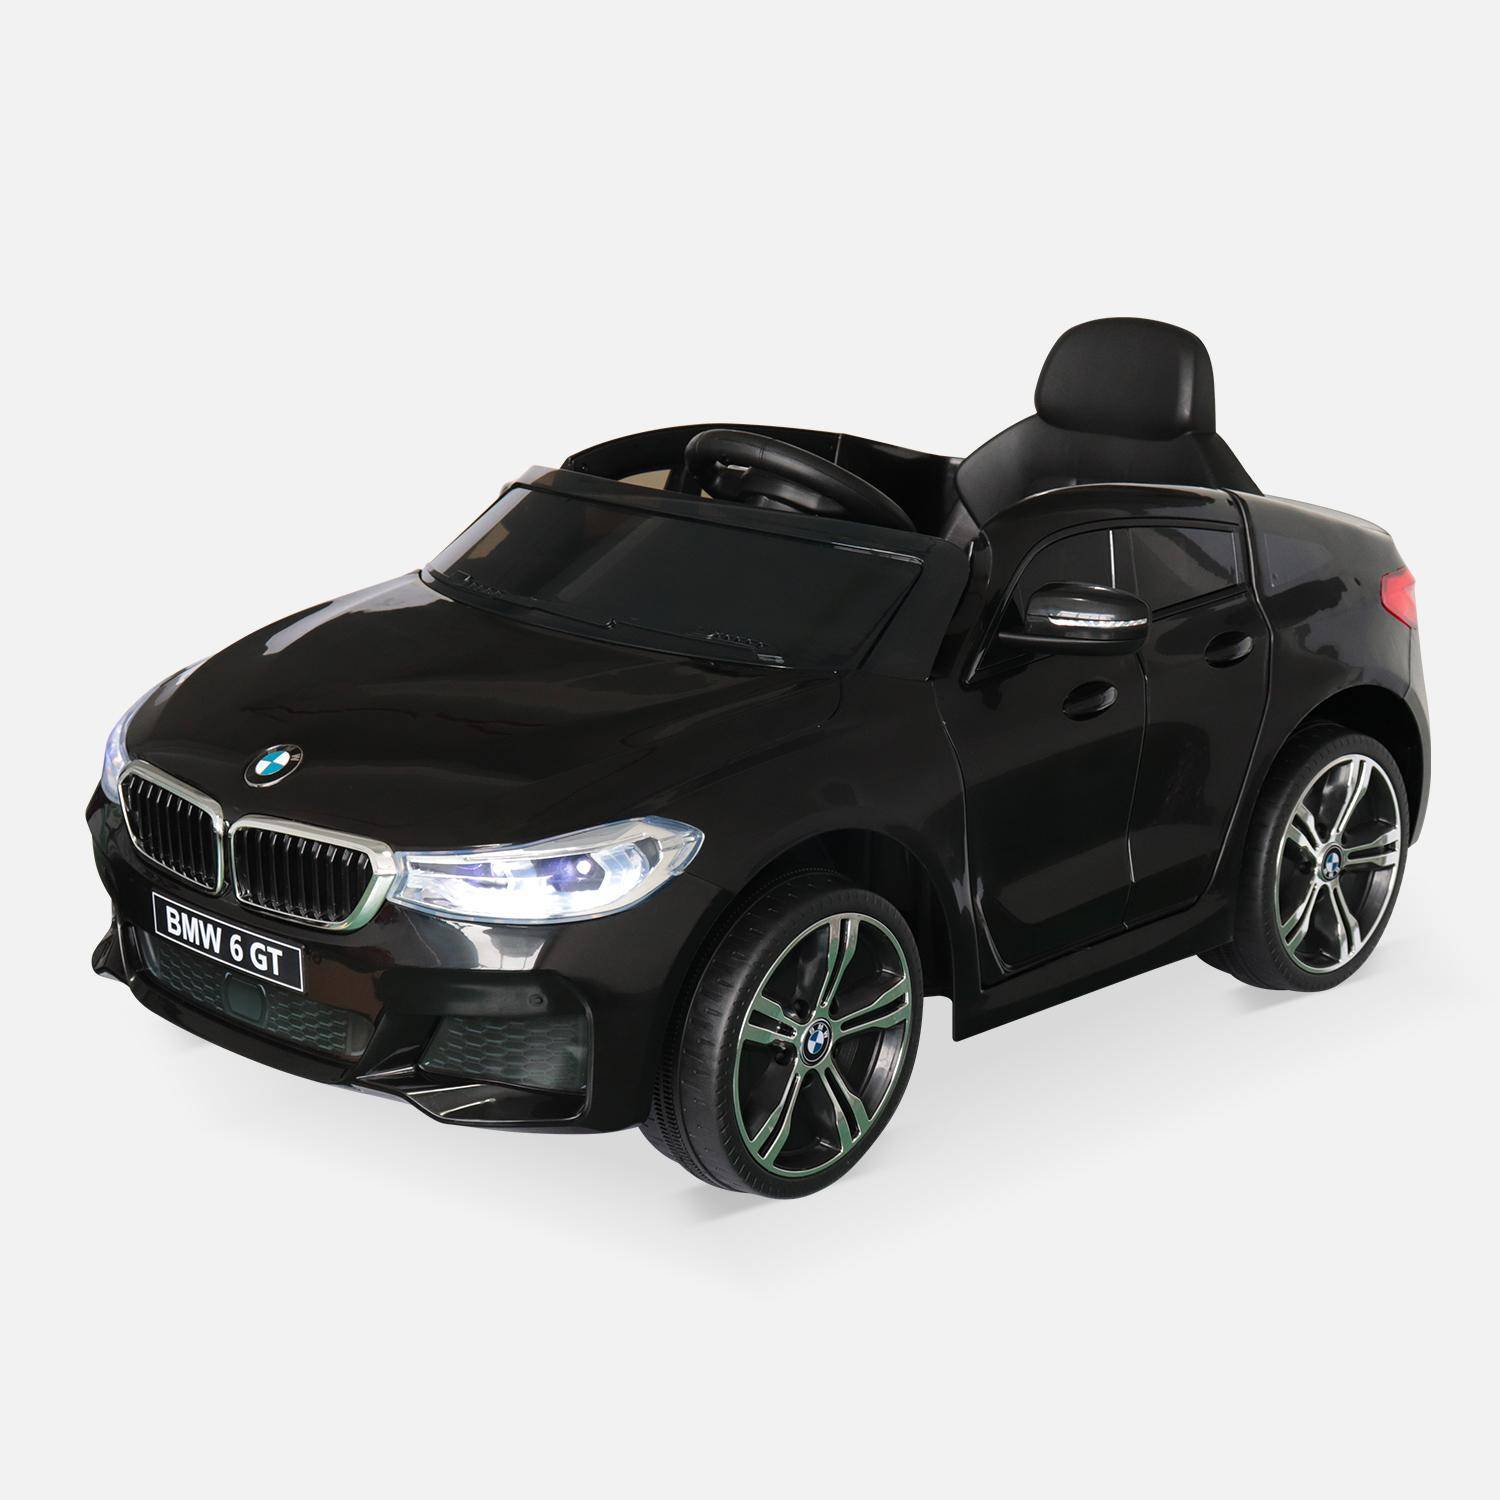 BMW Serie 6 GT Gran Turismo nera, auto elettrica per bambini 12V 4 Ah, 1 posto, con autoradio e telecomando,sweeek,Photo2